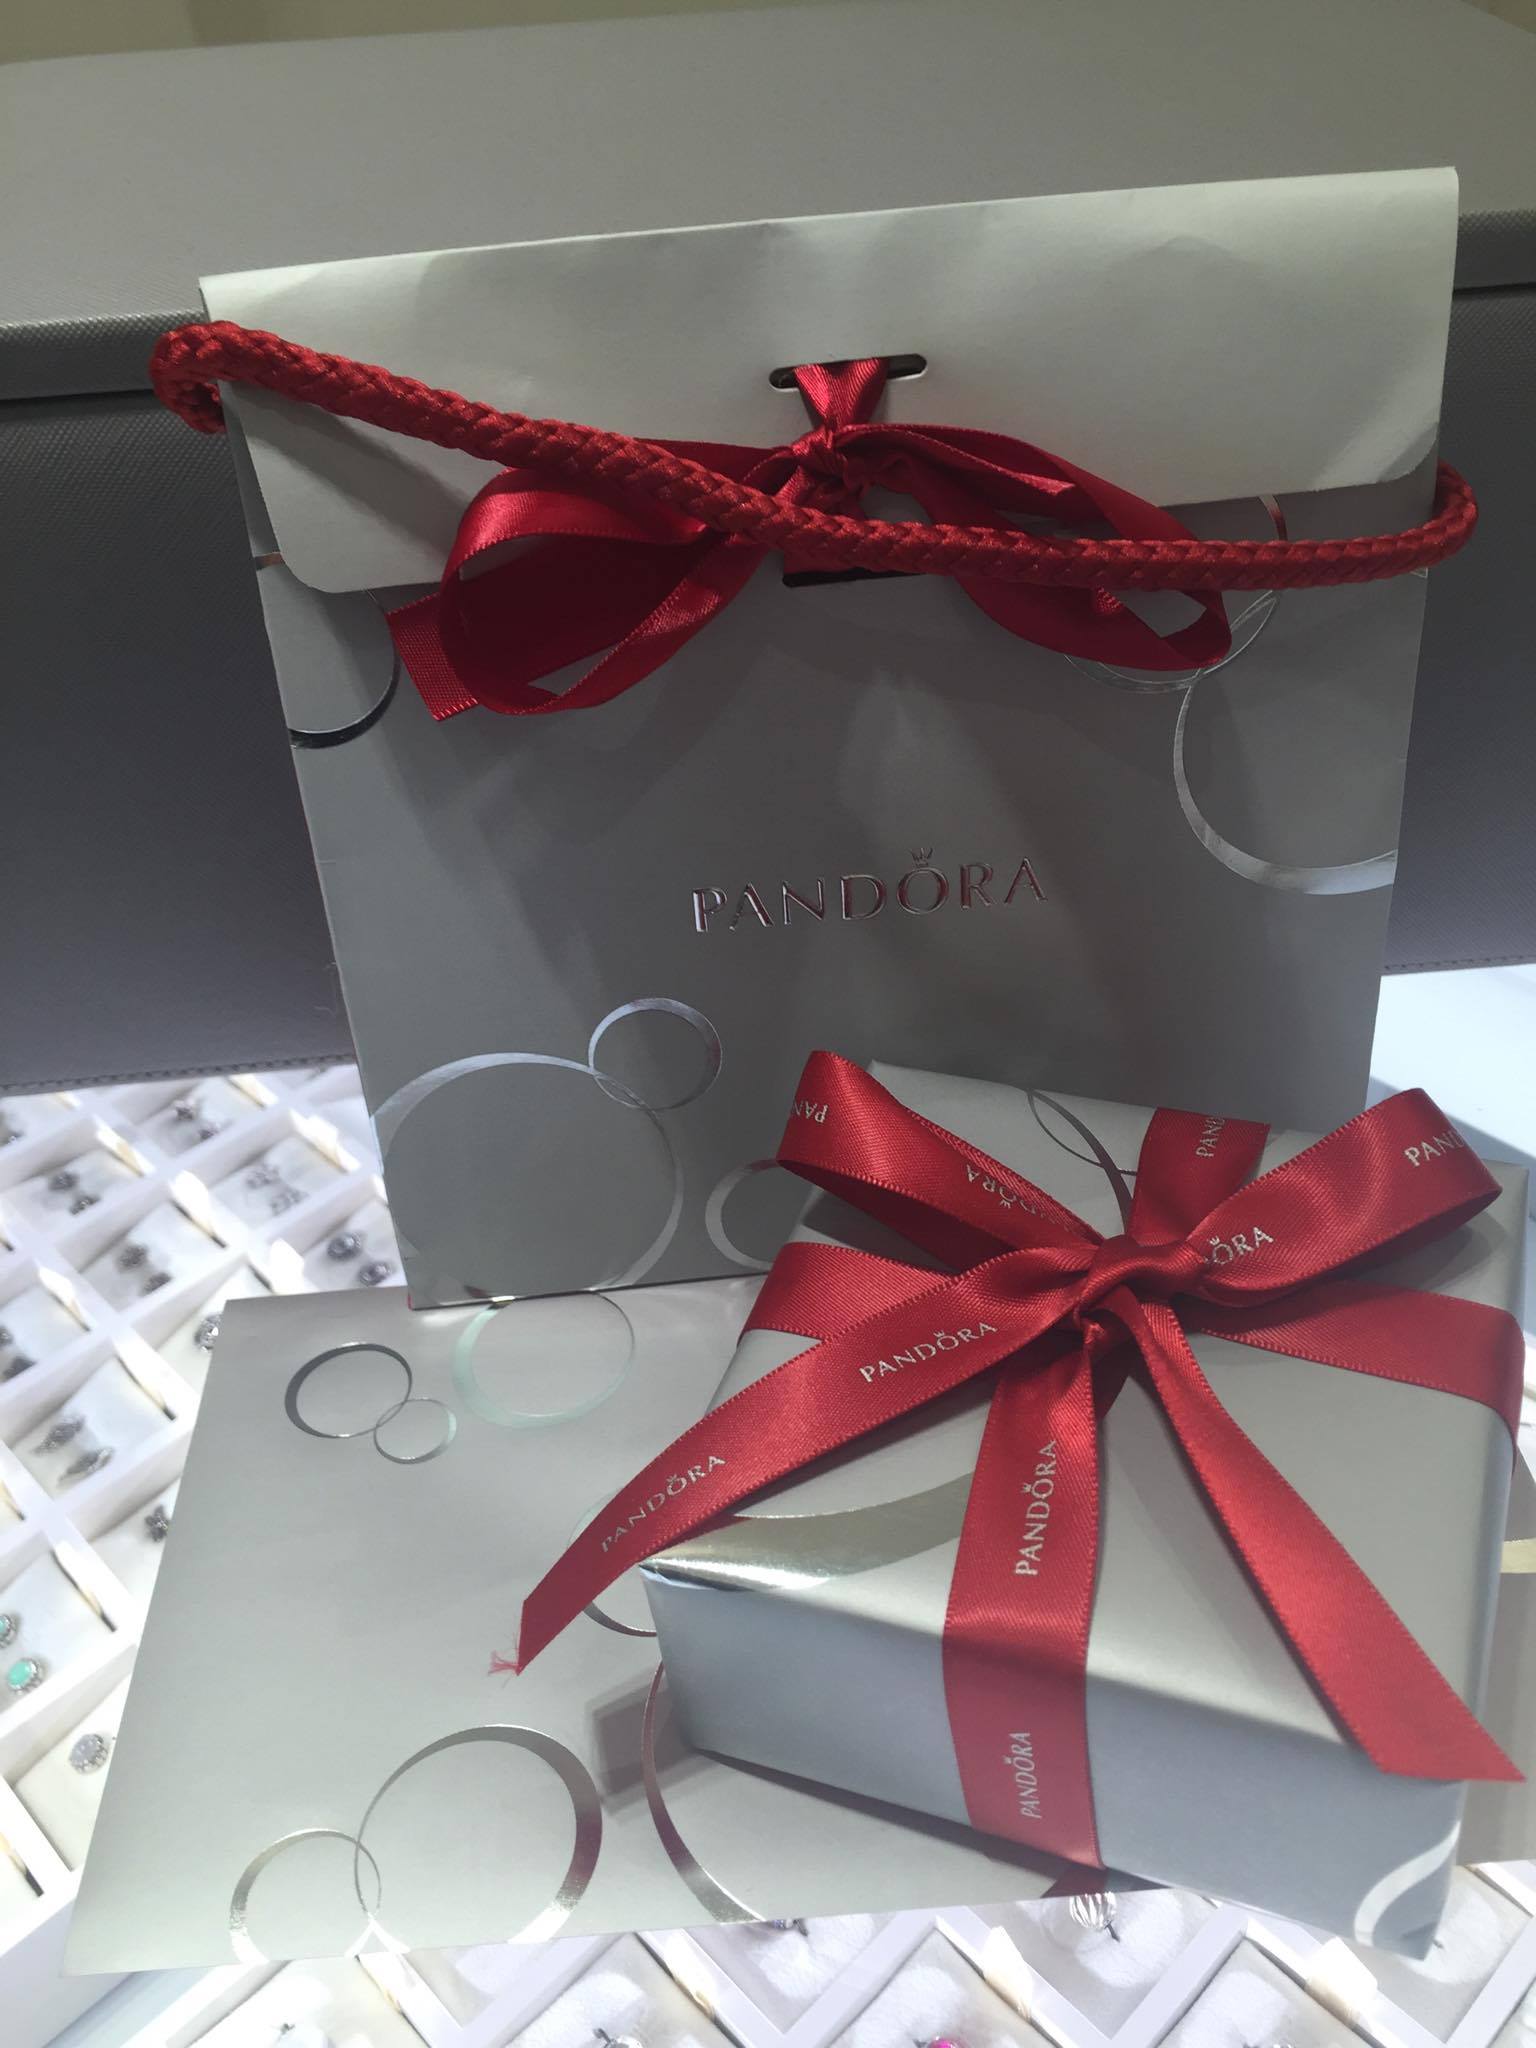 pandora gift packaging 2016